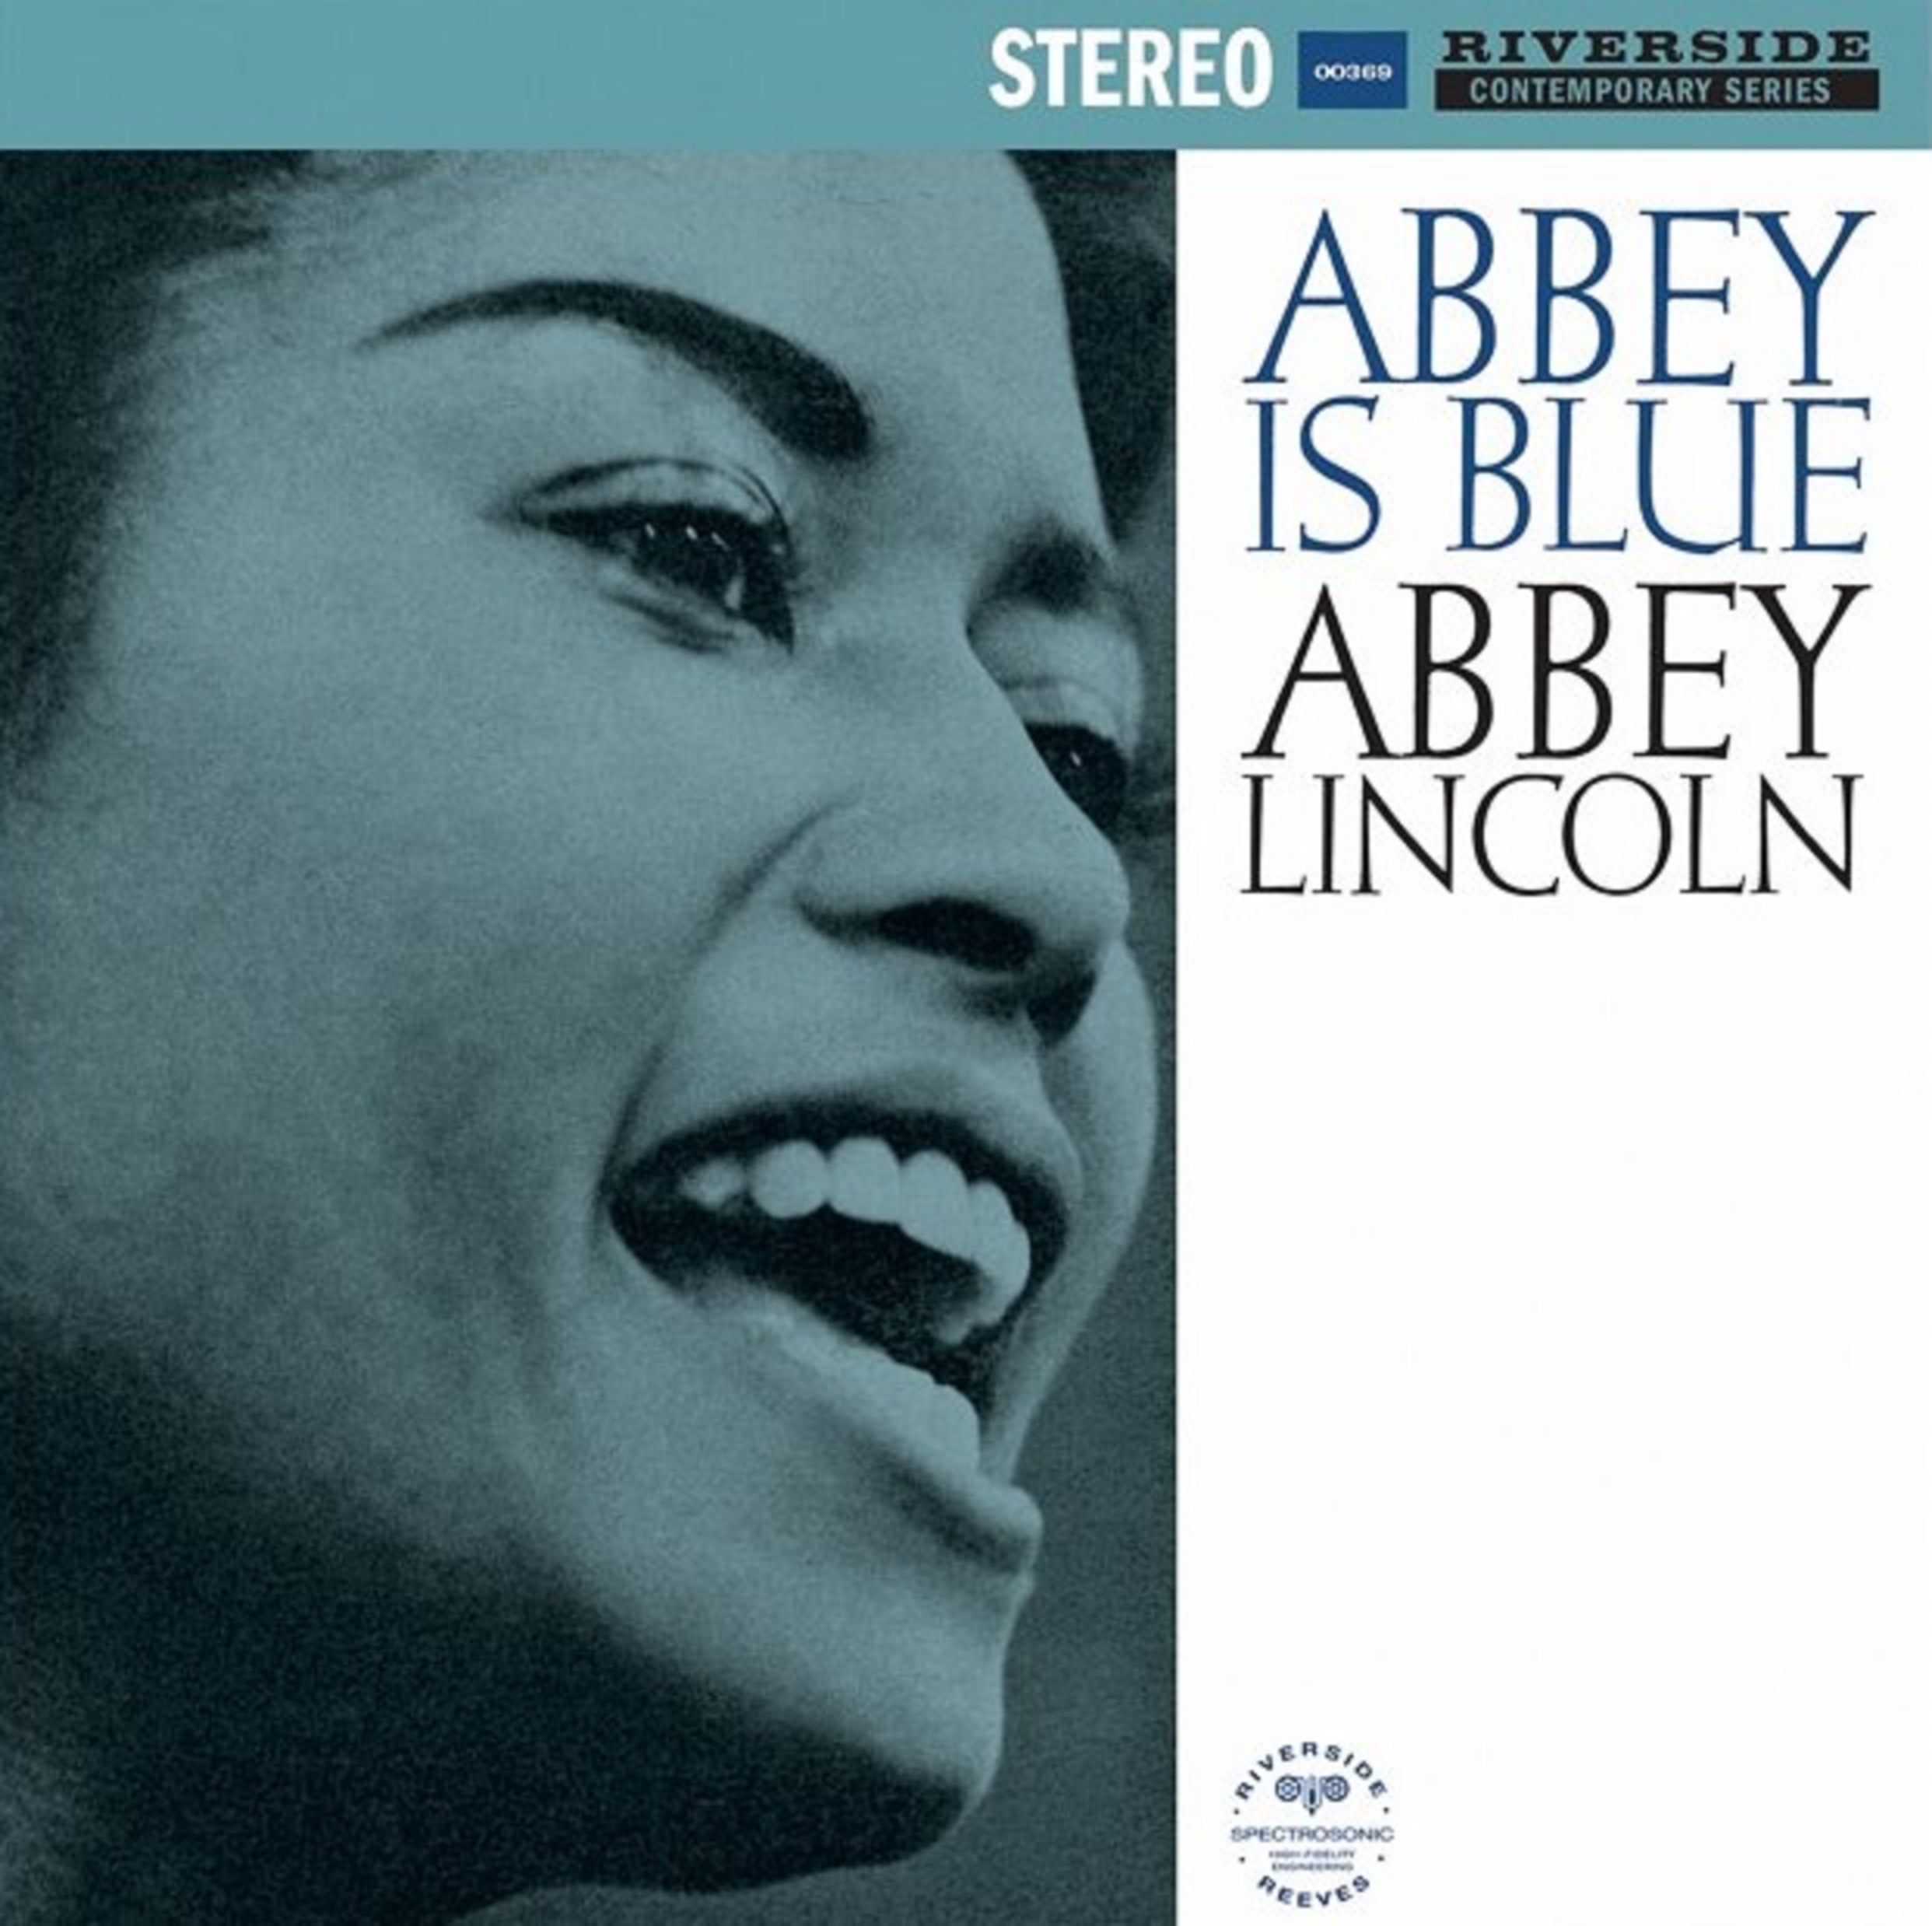 Abbey Lincoln’s landmark LP, Abbey Is Blue set for Vinyl Reissue